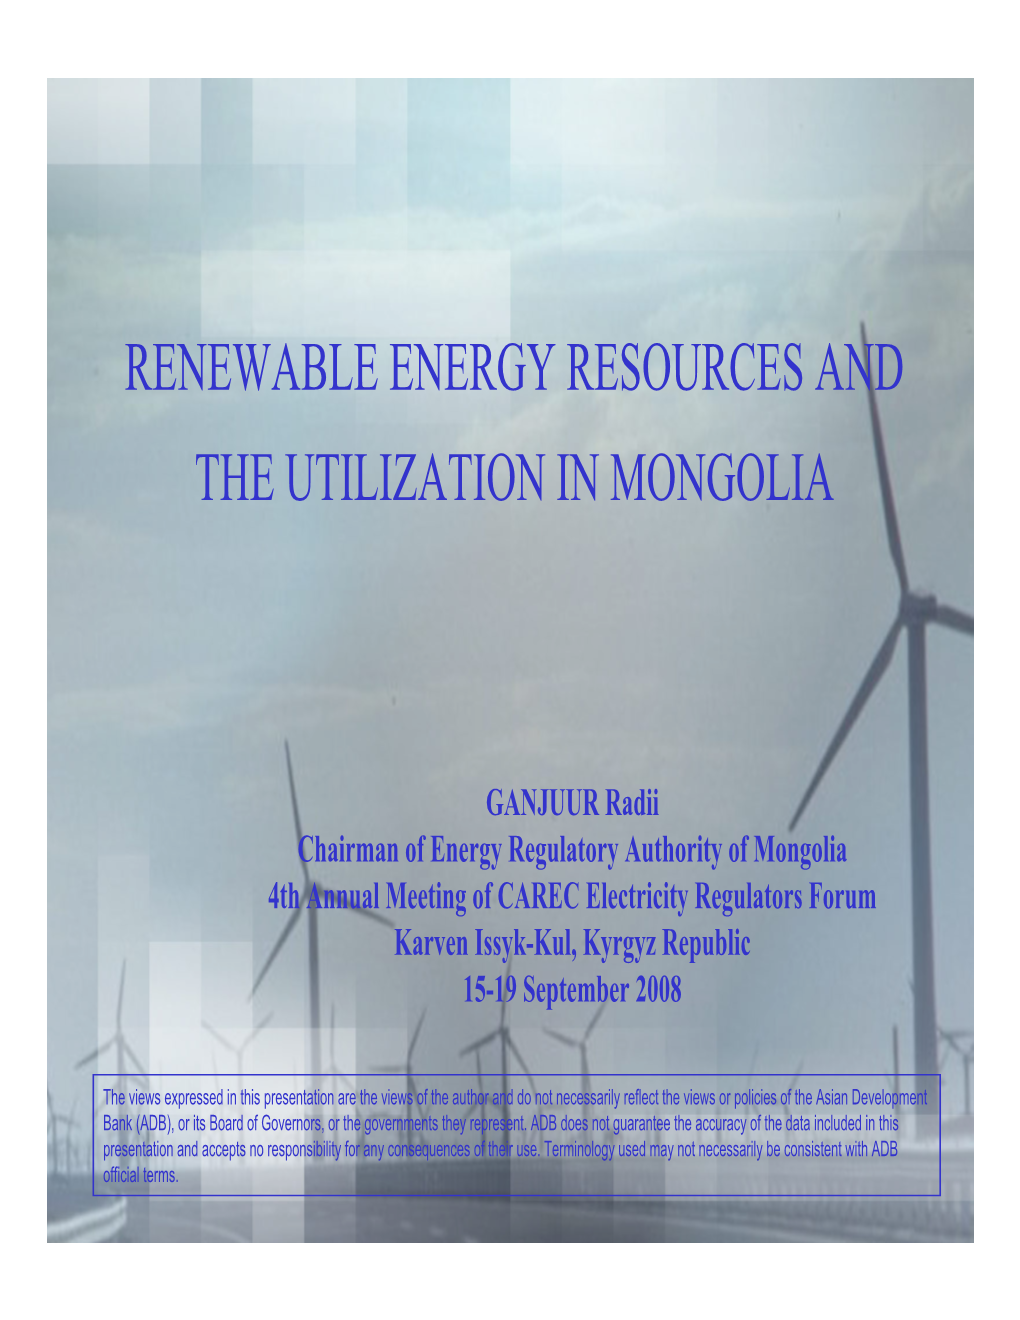 Renewable Energy Law and Program